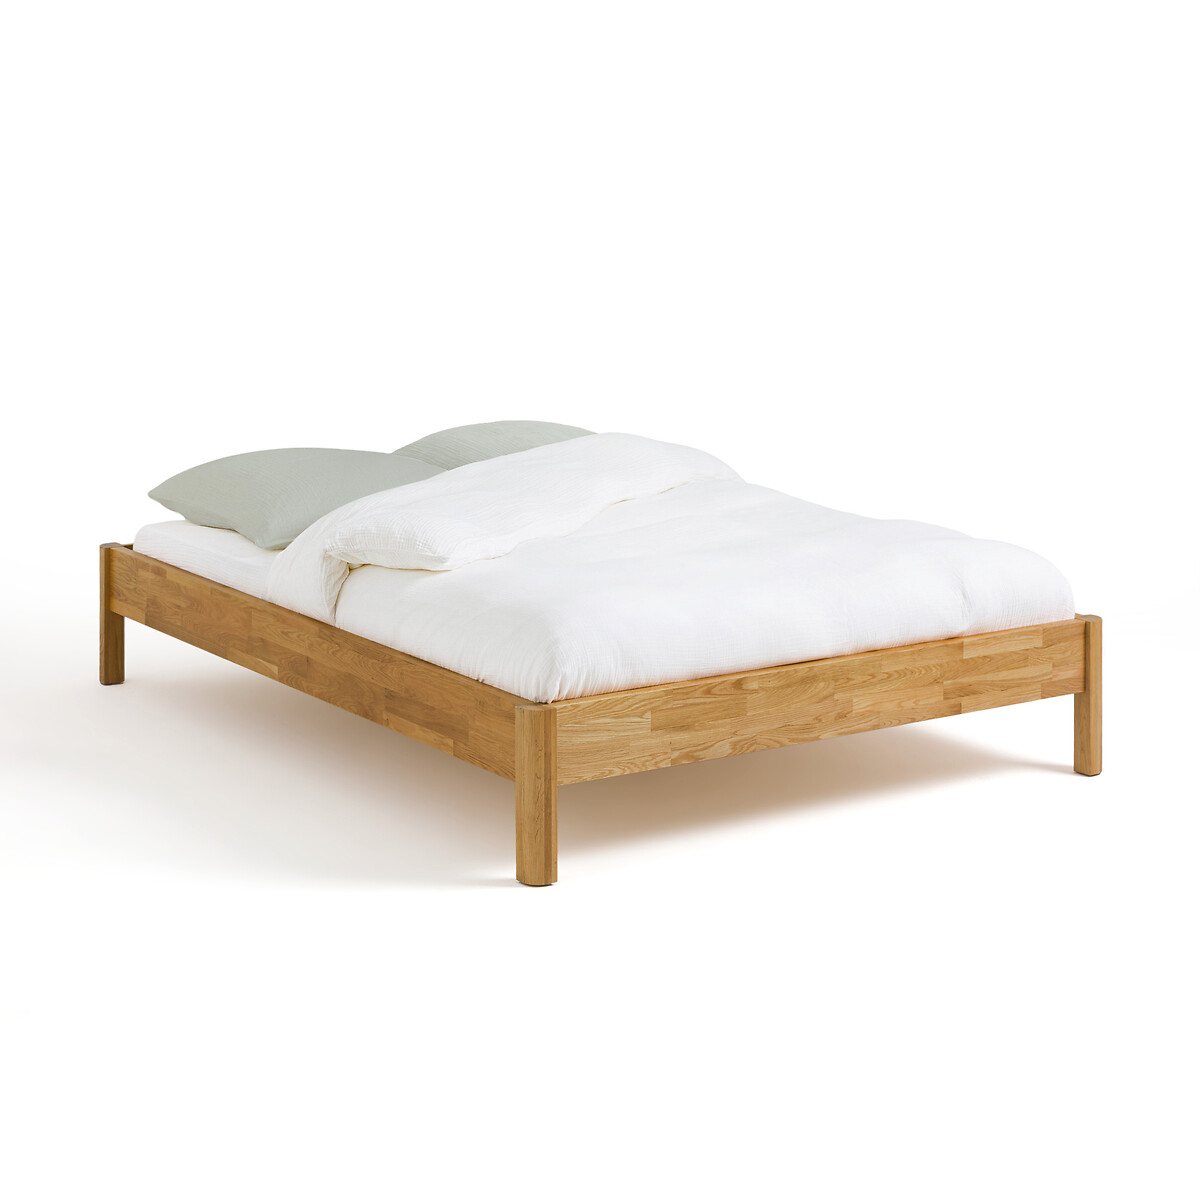 Кровать LaRedoute Кровать Из массива дуба без сетки Zulda 140 x 190 см каштановый